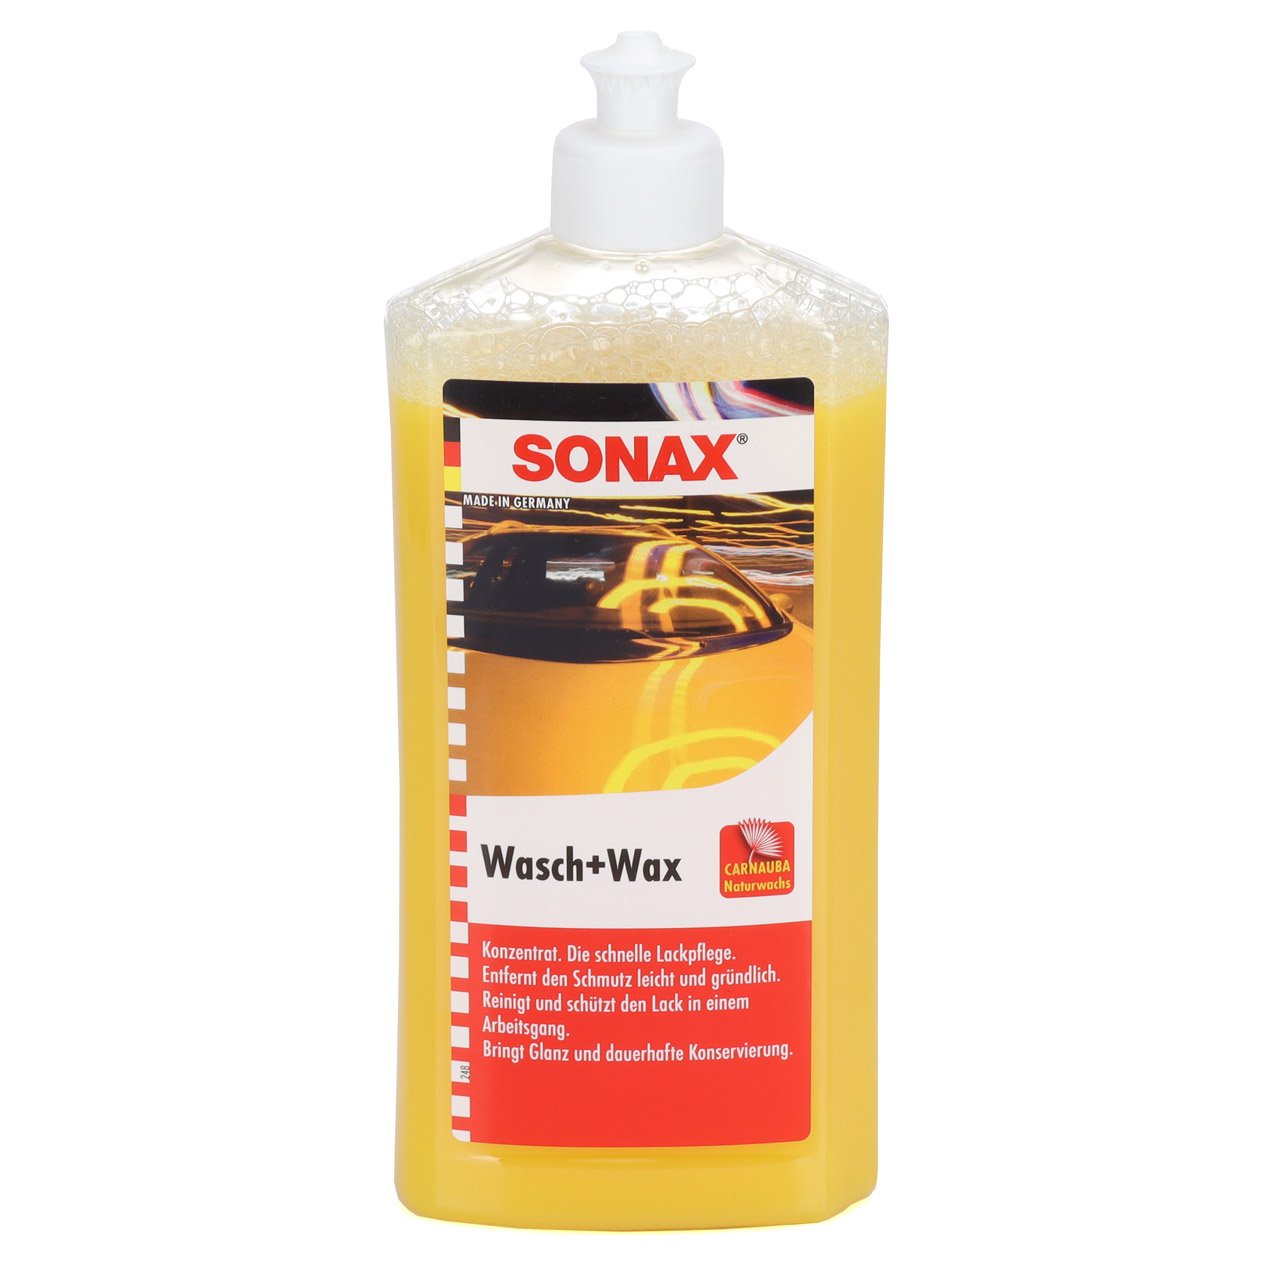 SONAX Autoshampoo Konzentrat Wasch&Wax + Multischwamm + Applikationsschwamm